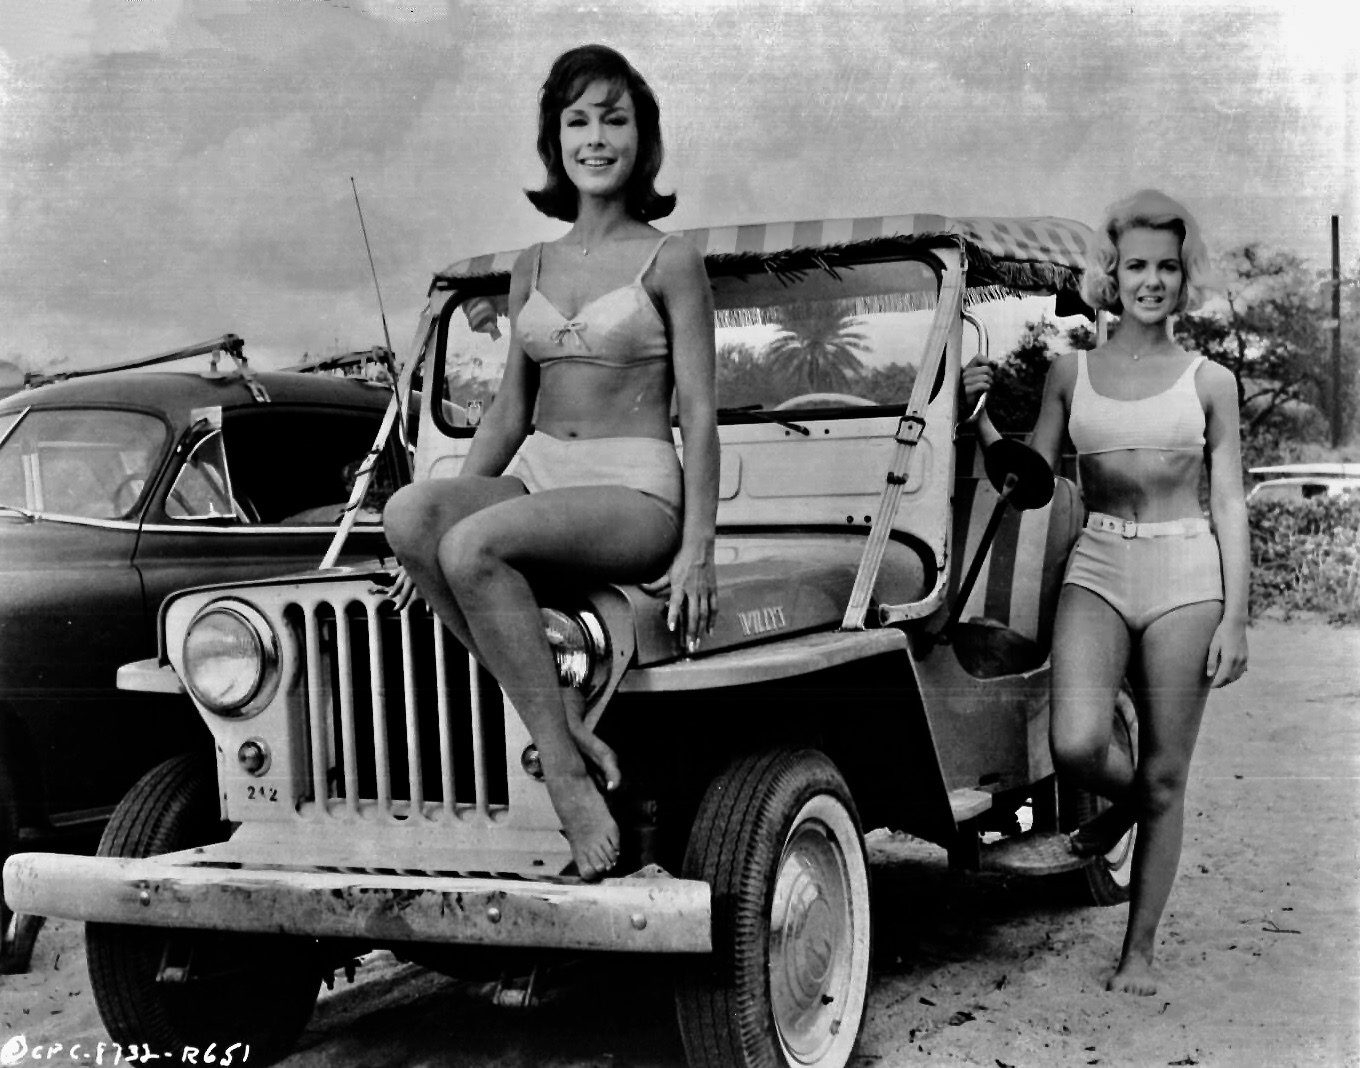 Ride the wild surf, 1964